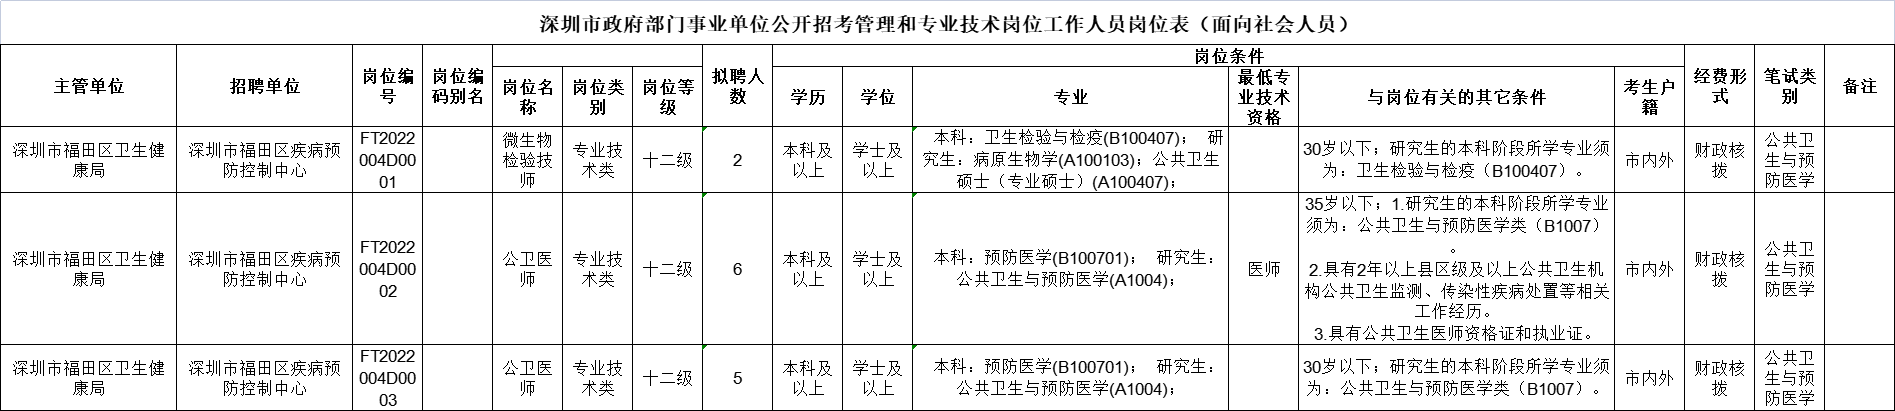 深圳市福田区疾病预防控制中心公开招聘专业技术岗位工作人员公告2022